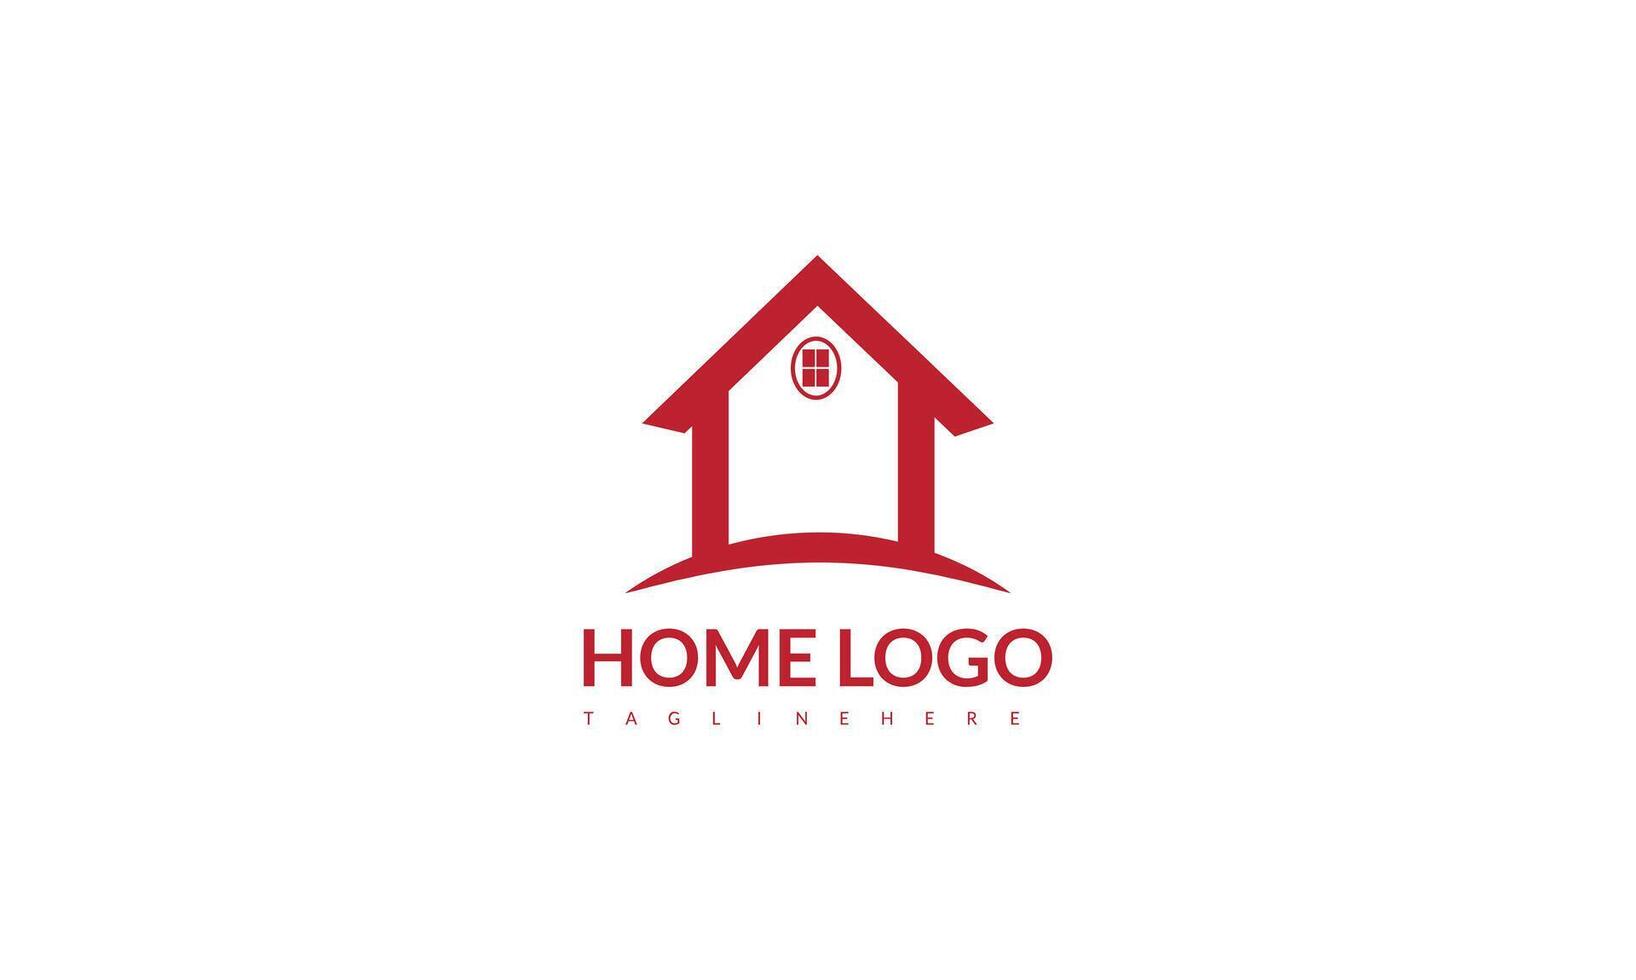 Creative Home Smart-Logo-Details mit sauberem Hintergrund vektor